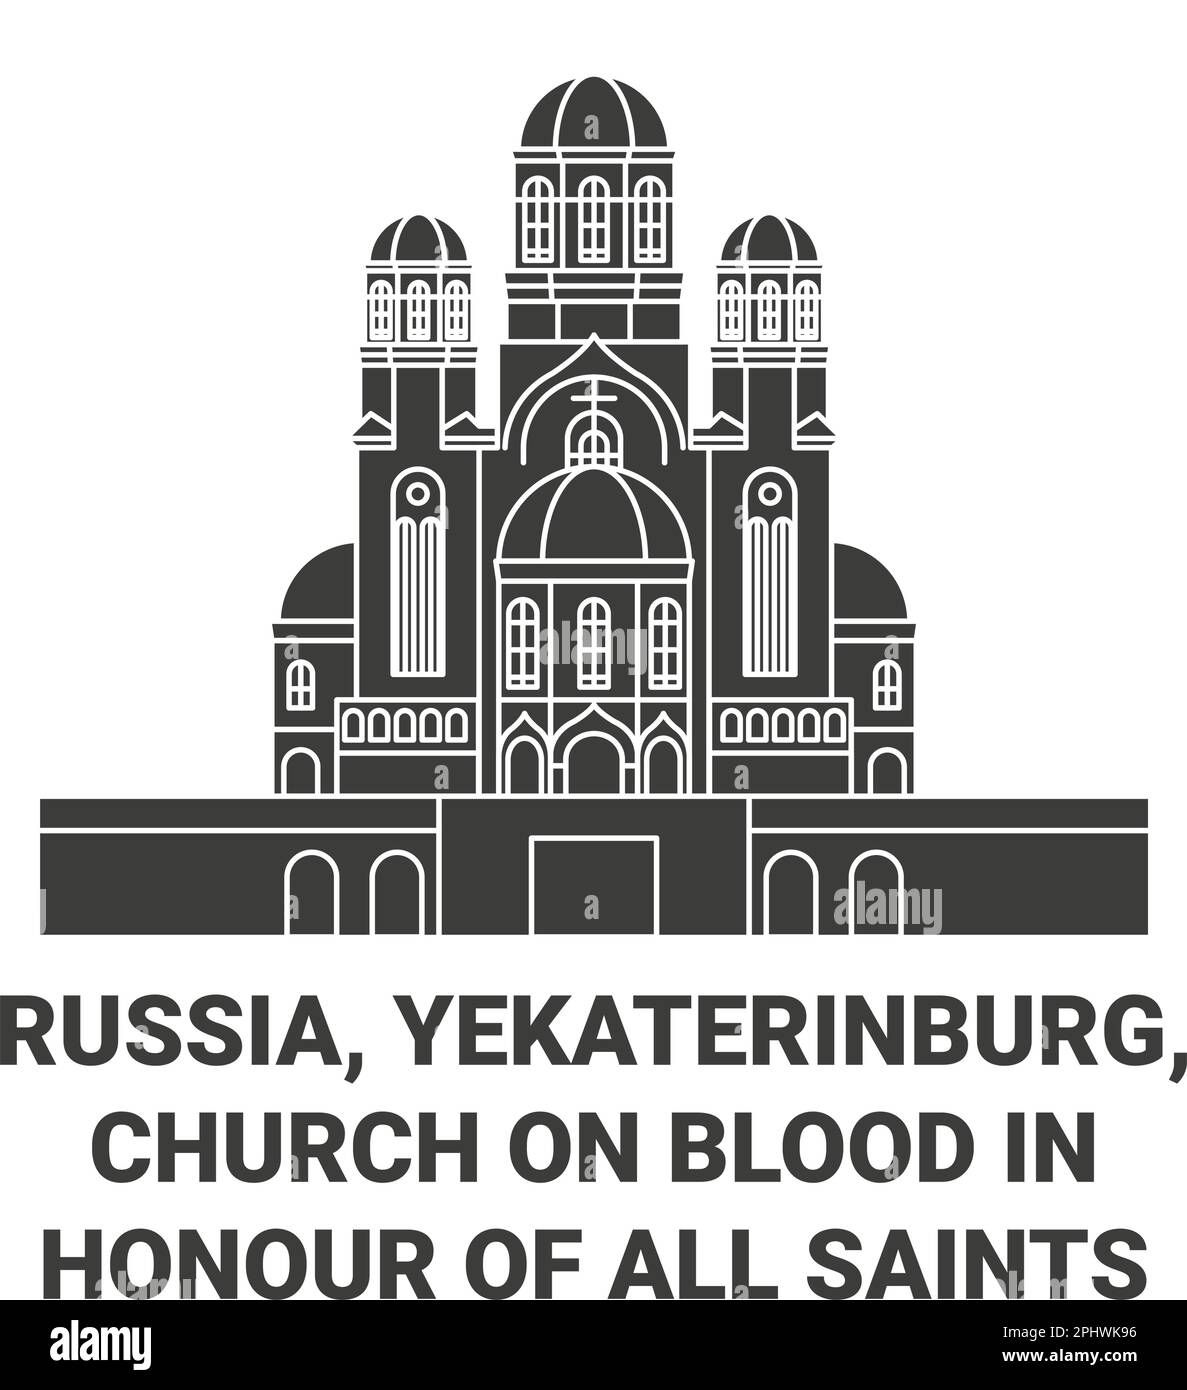 Russia, Ekaterinburg, Chiesa sul sangue in onore di tutti i Santi risplende nell'illustrazione vettoriale di riferimento del viaggio della Terra Russa Illustrazione Vettoriale